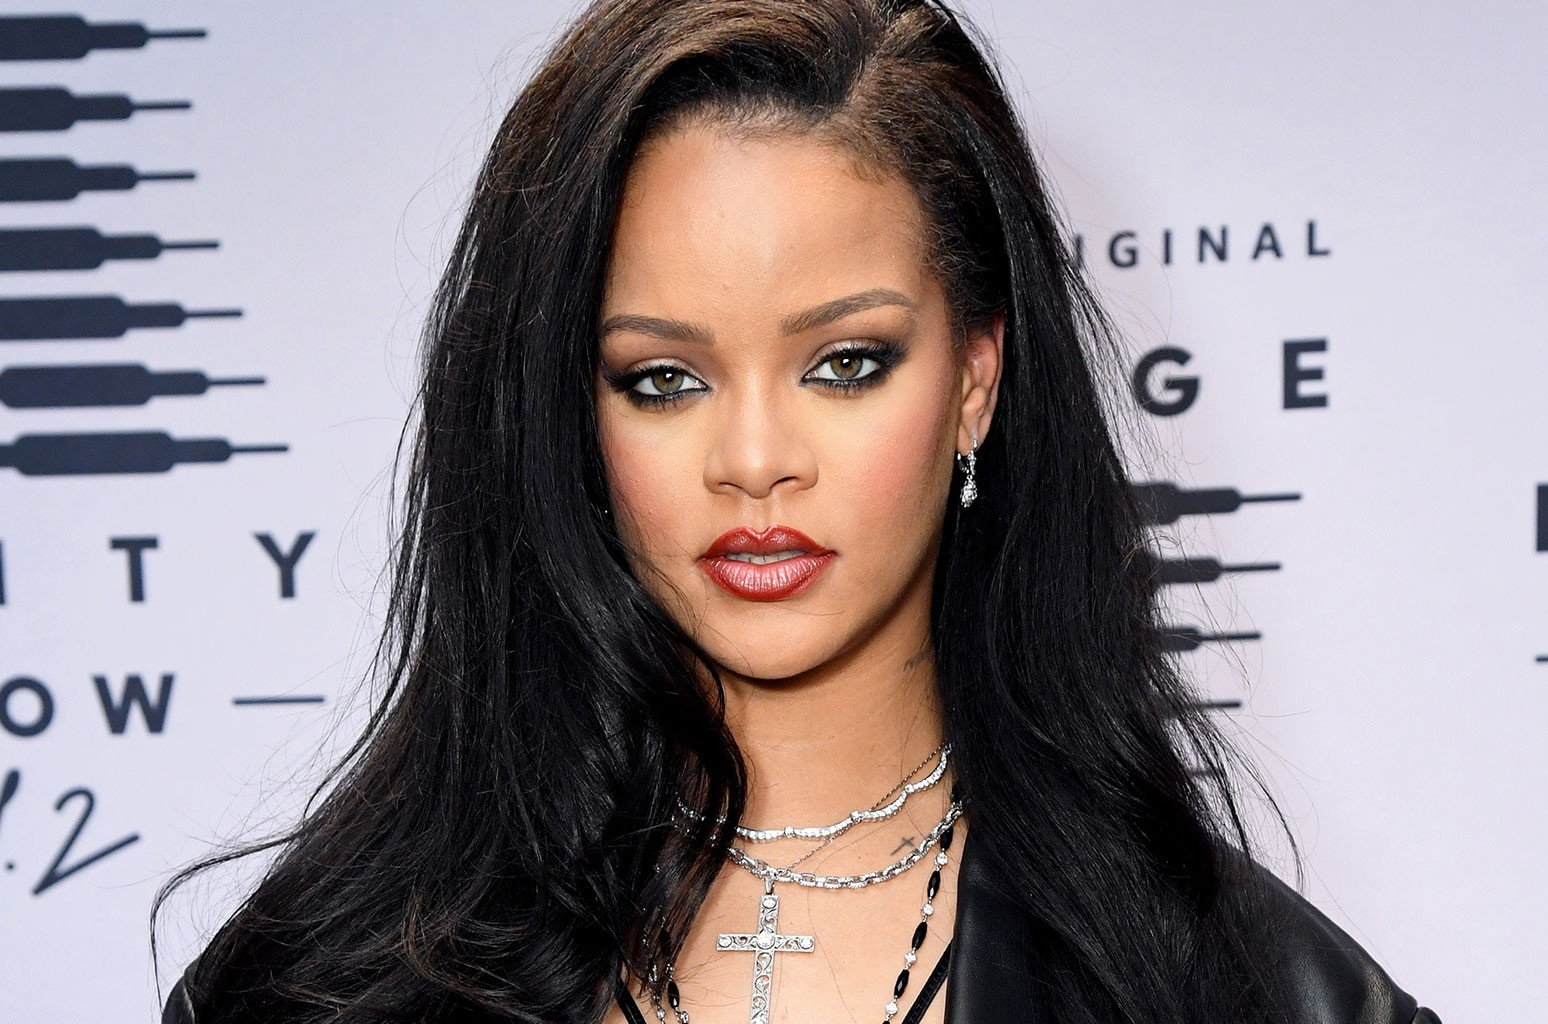 La pista de Rihanna que podría desvelar el sexo de su bebé